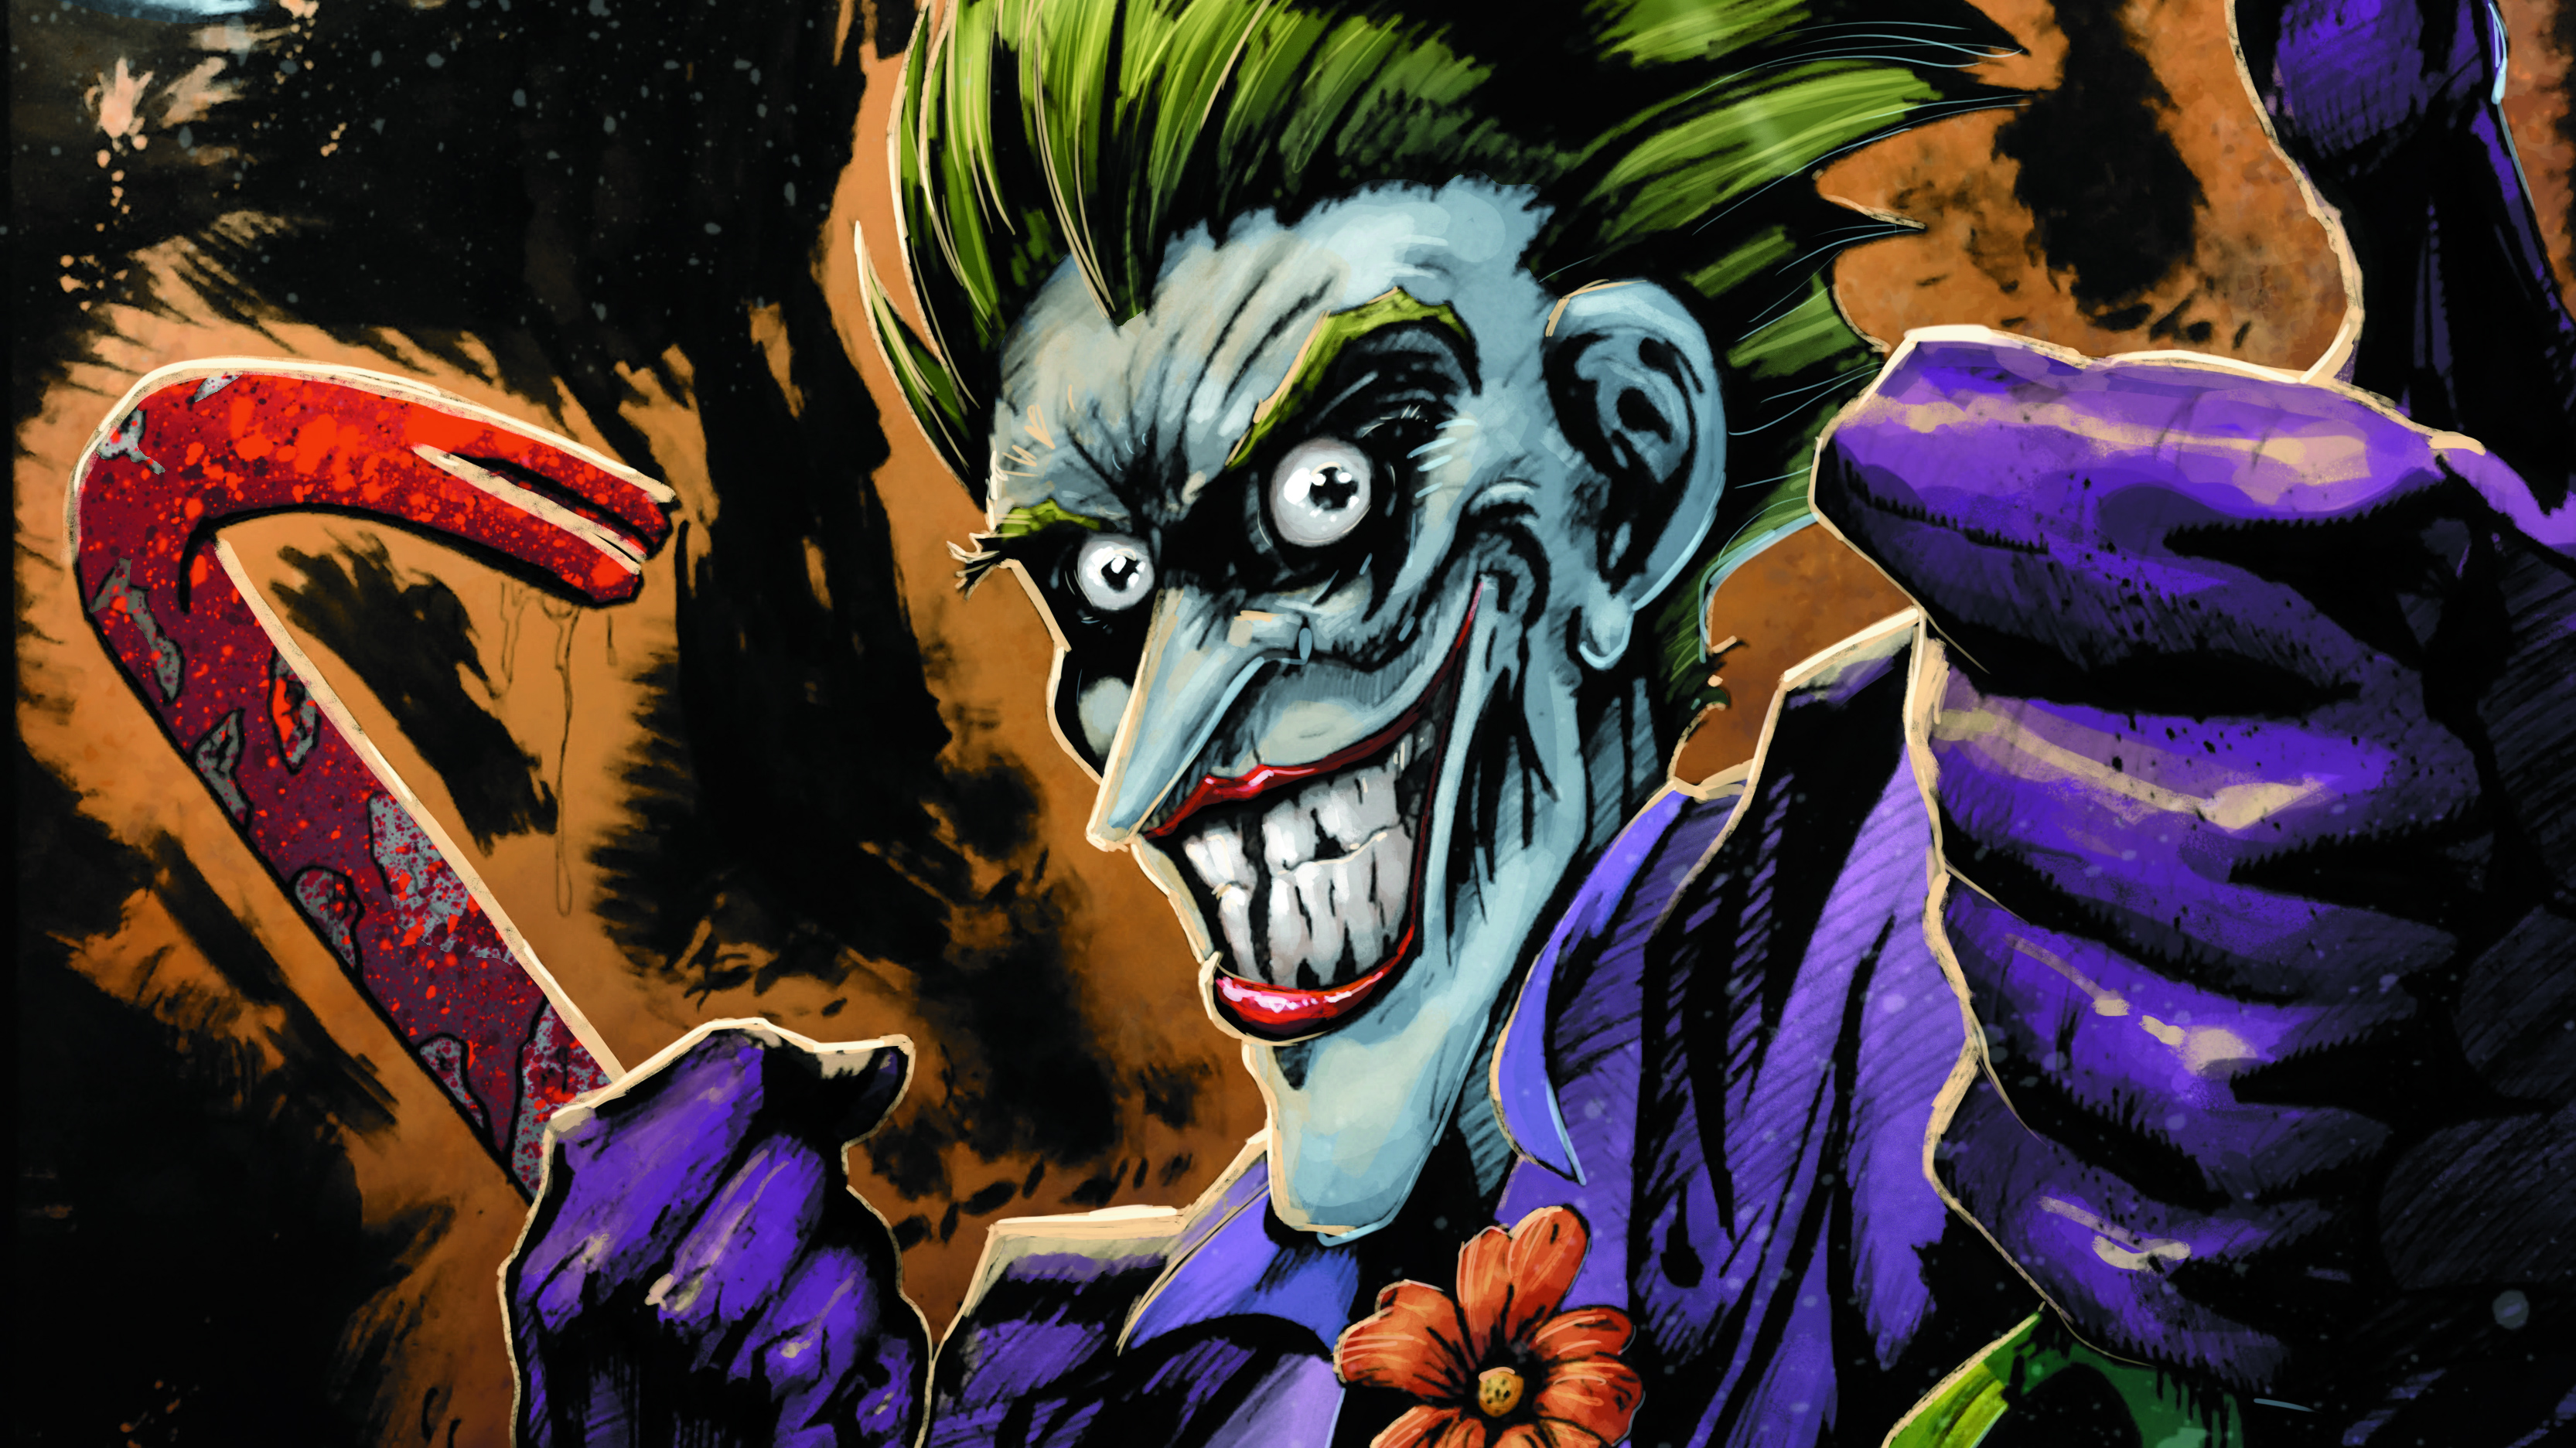 joker smile 2020 artwork, hd superheroes, 4k wallpapers on joker cartoon wallpapers